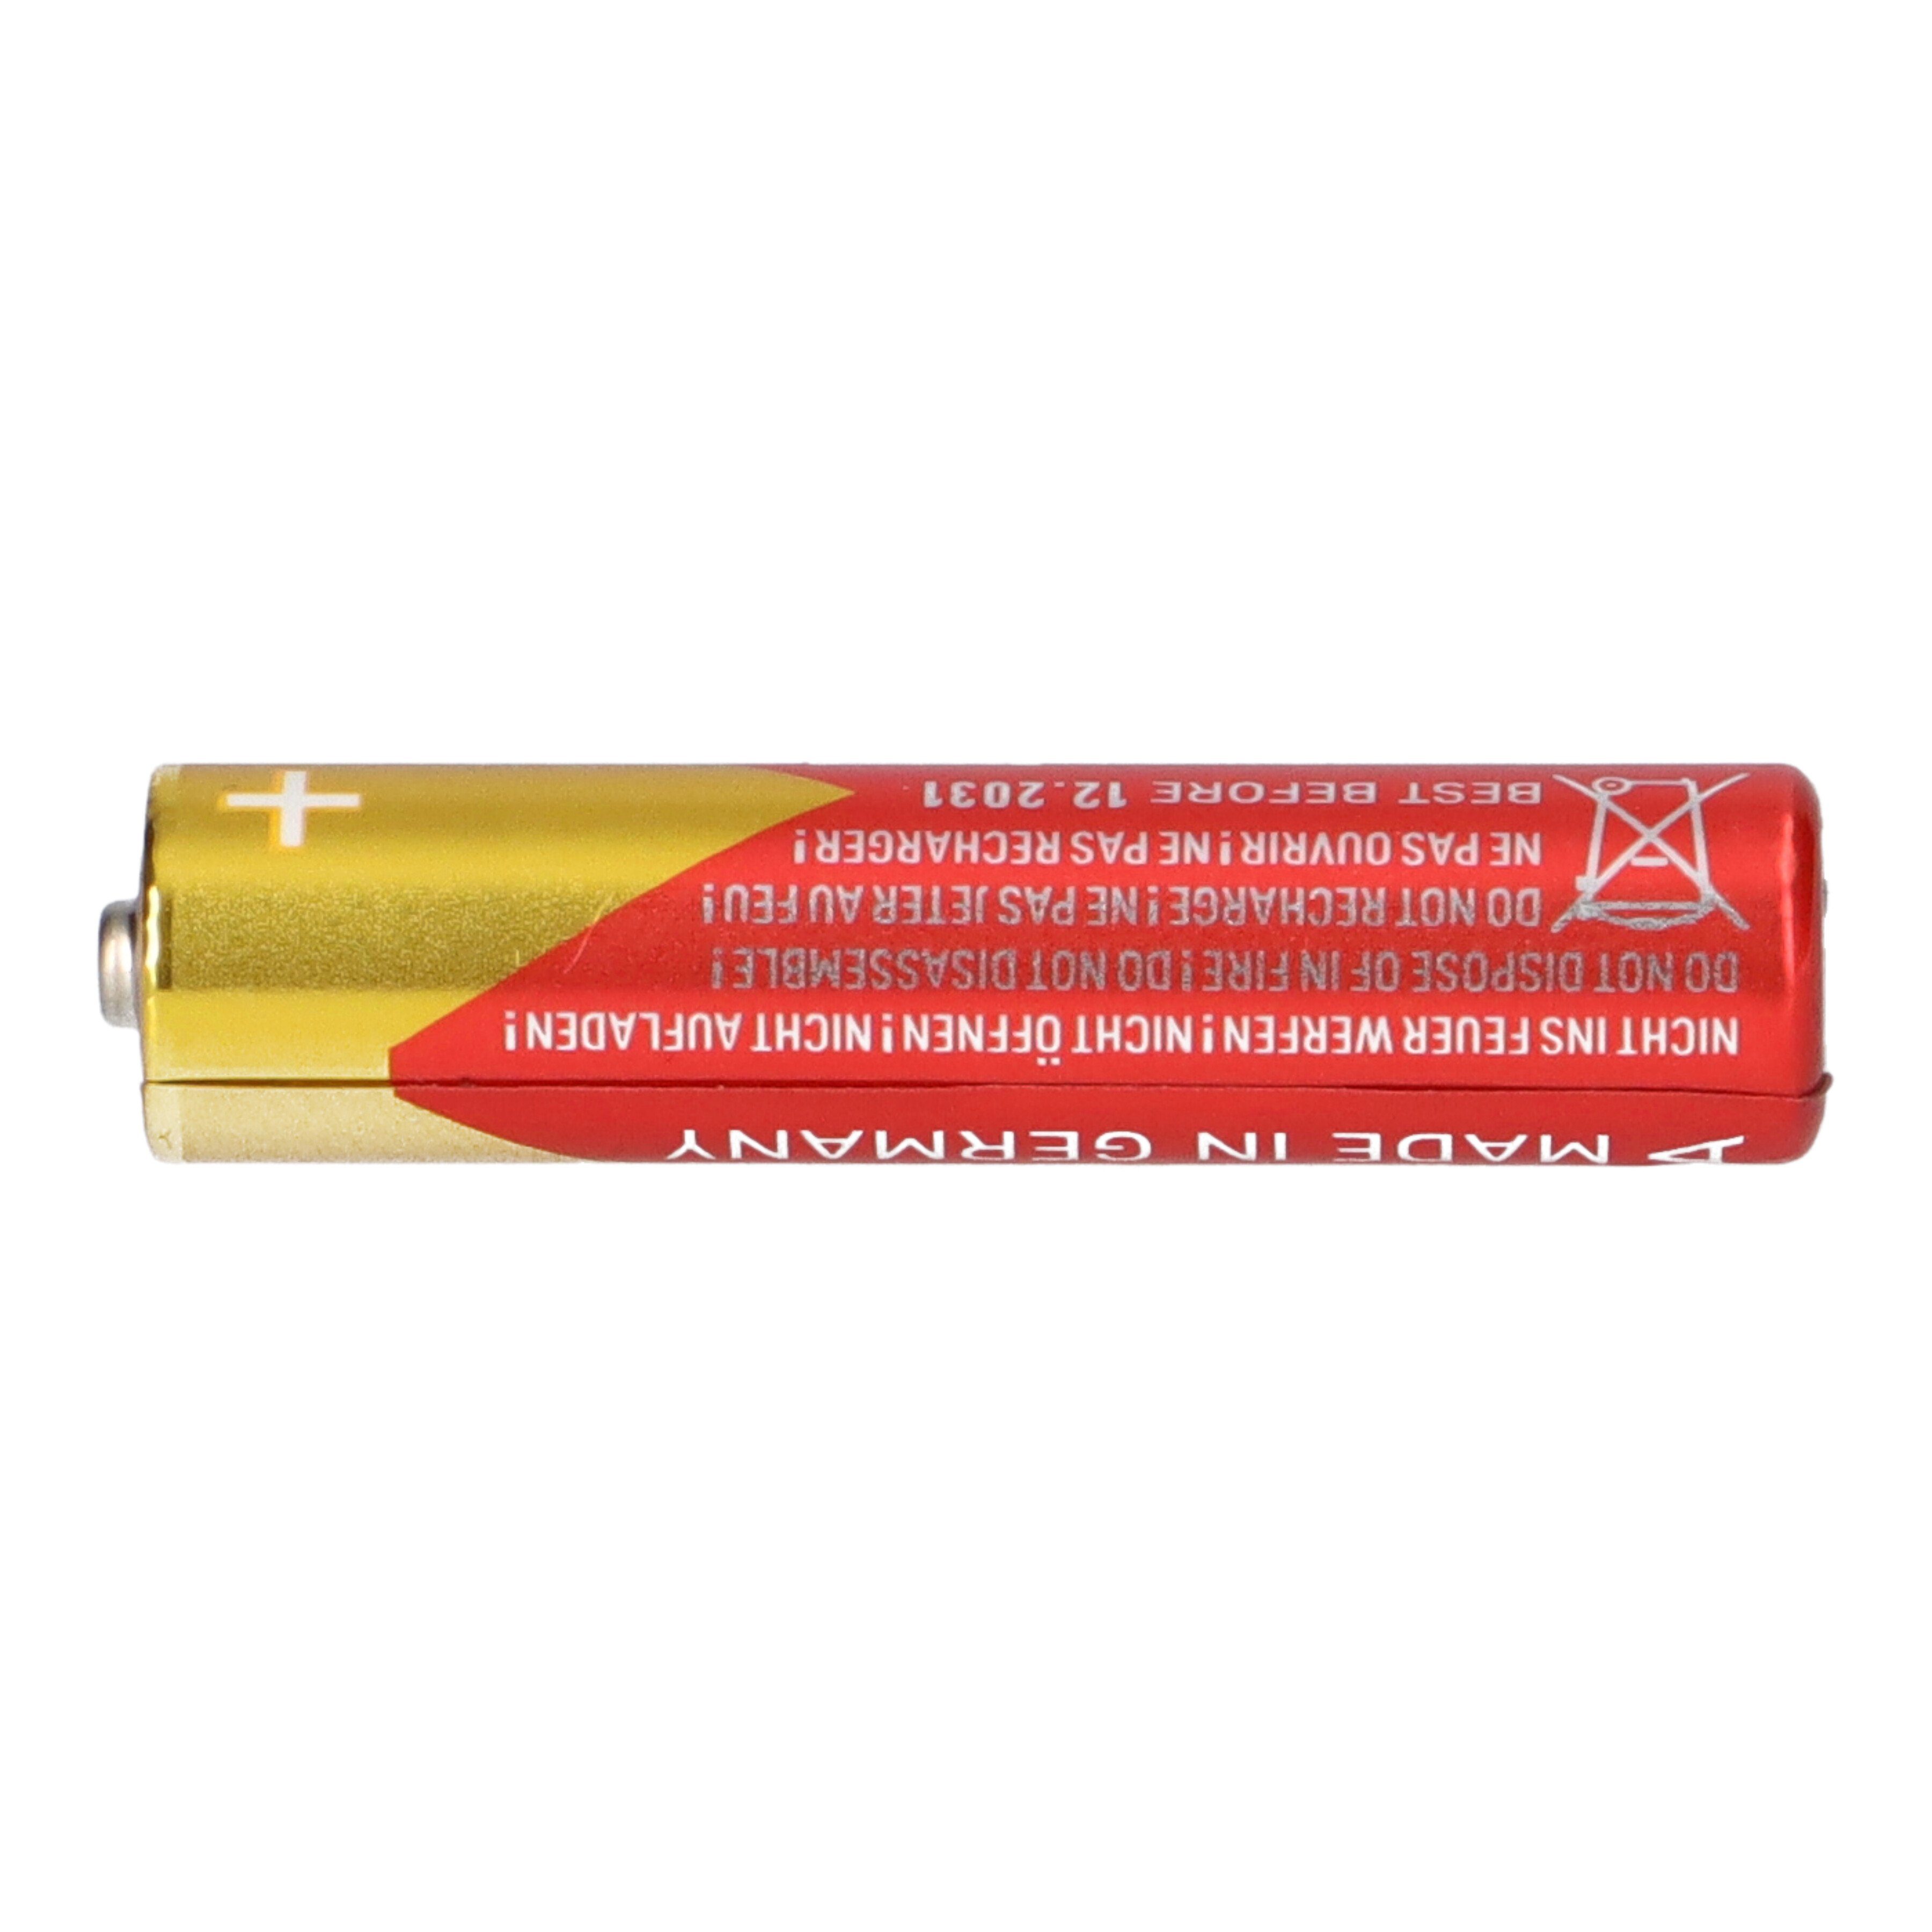 VARTA Varta Blister Power 4er Batterie AAA 4703 Batterie Micro Longlife Max